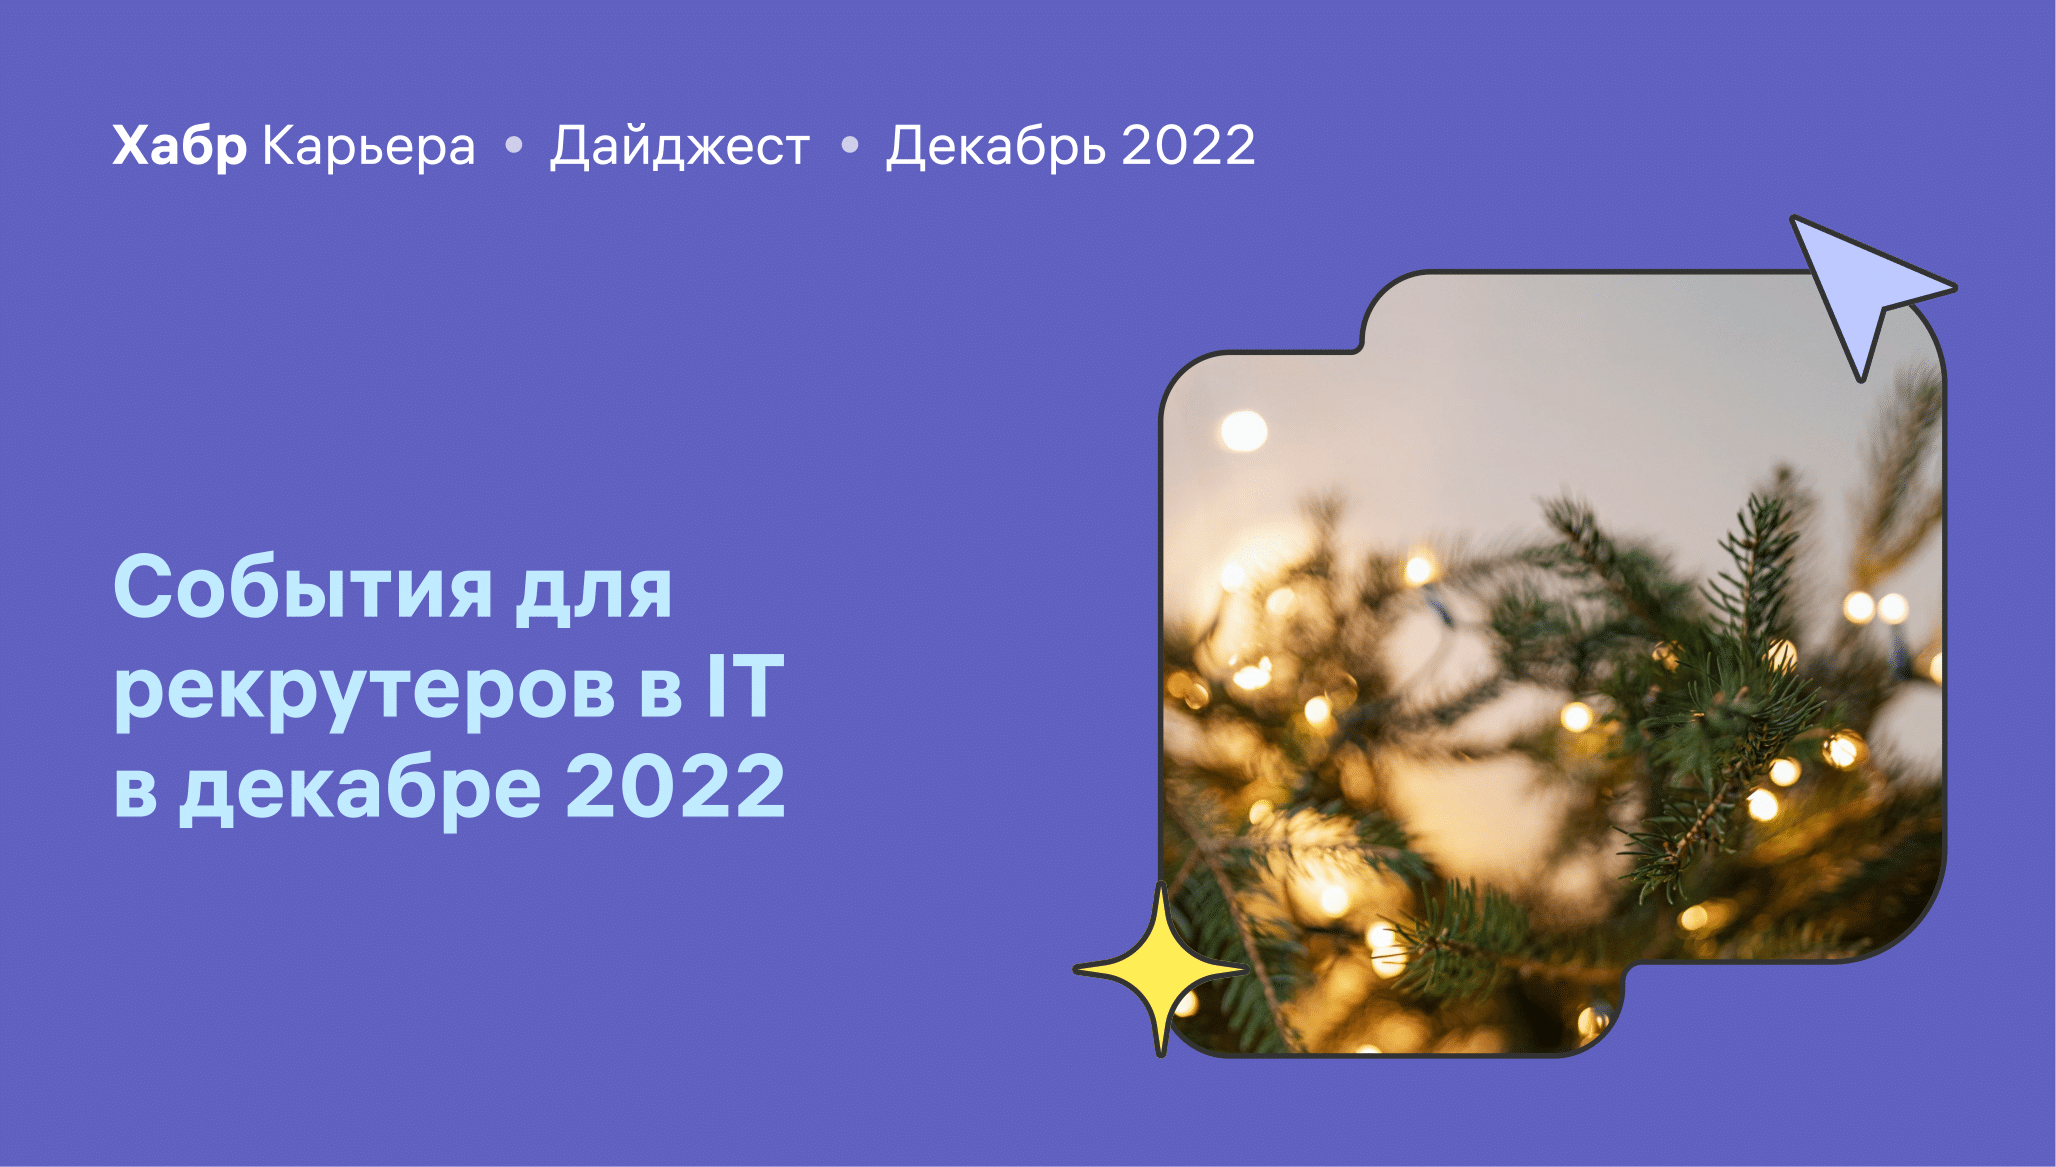 Дайджест событий для эйчаров и рекрутеров в IT в декабре 2022